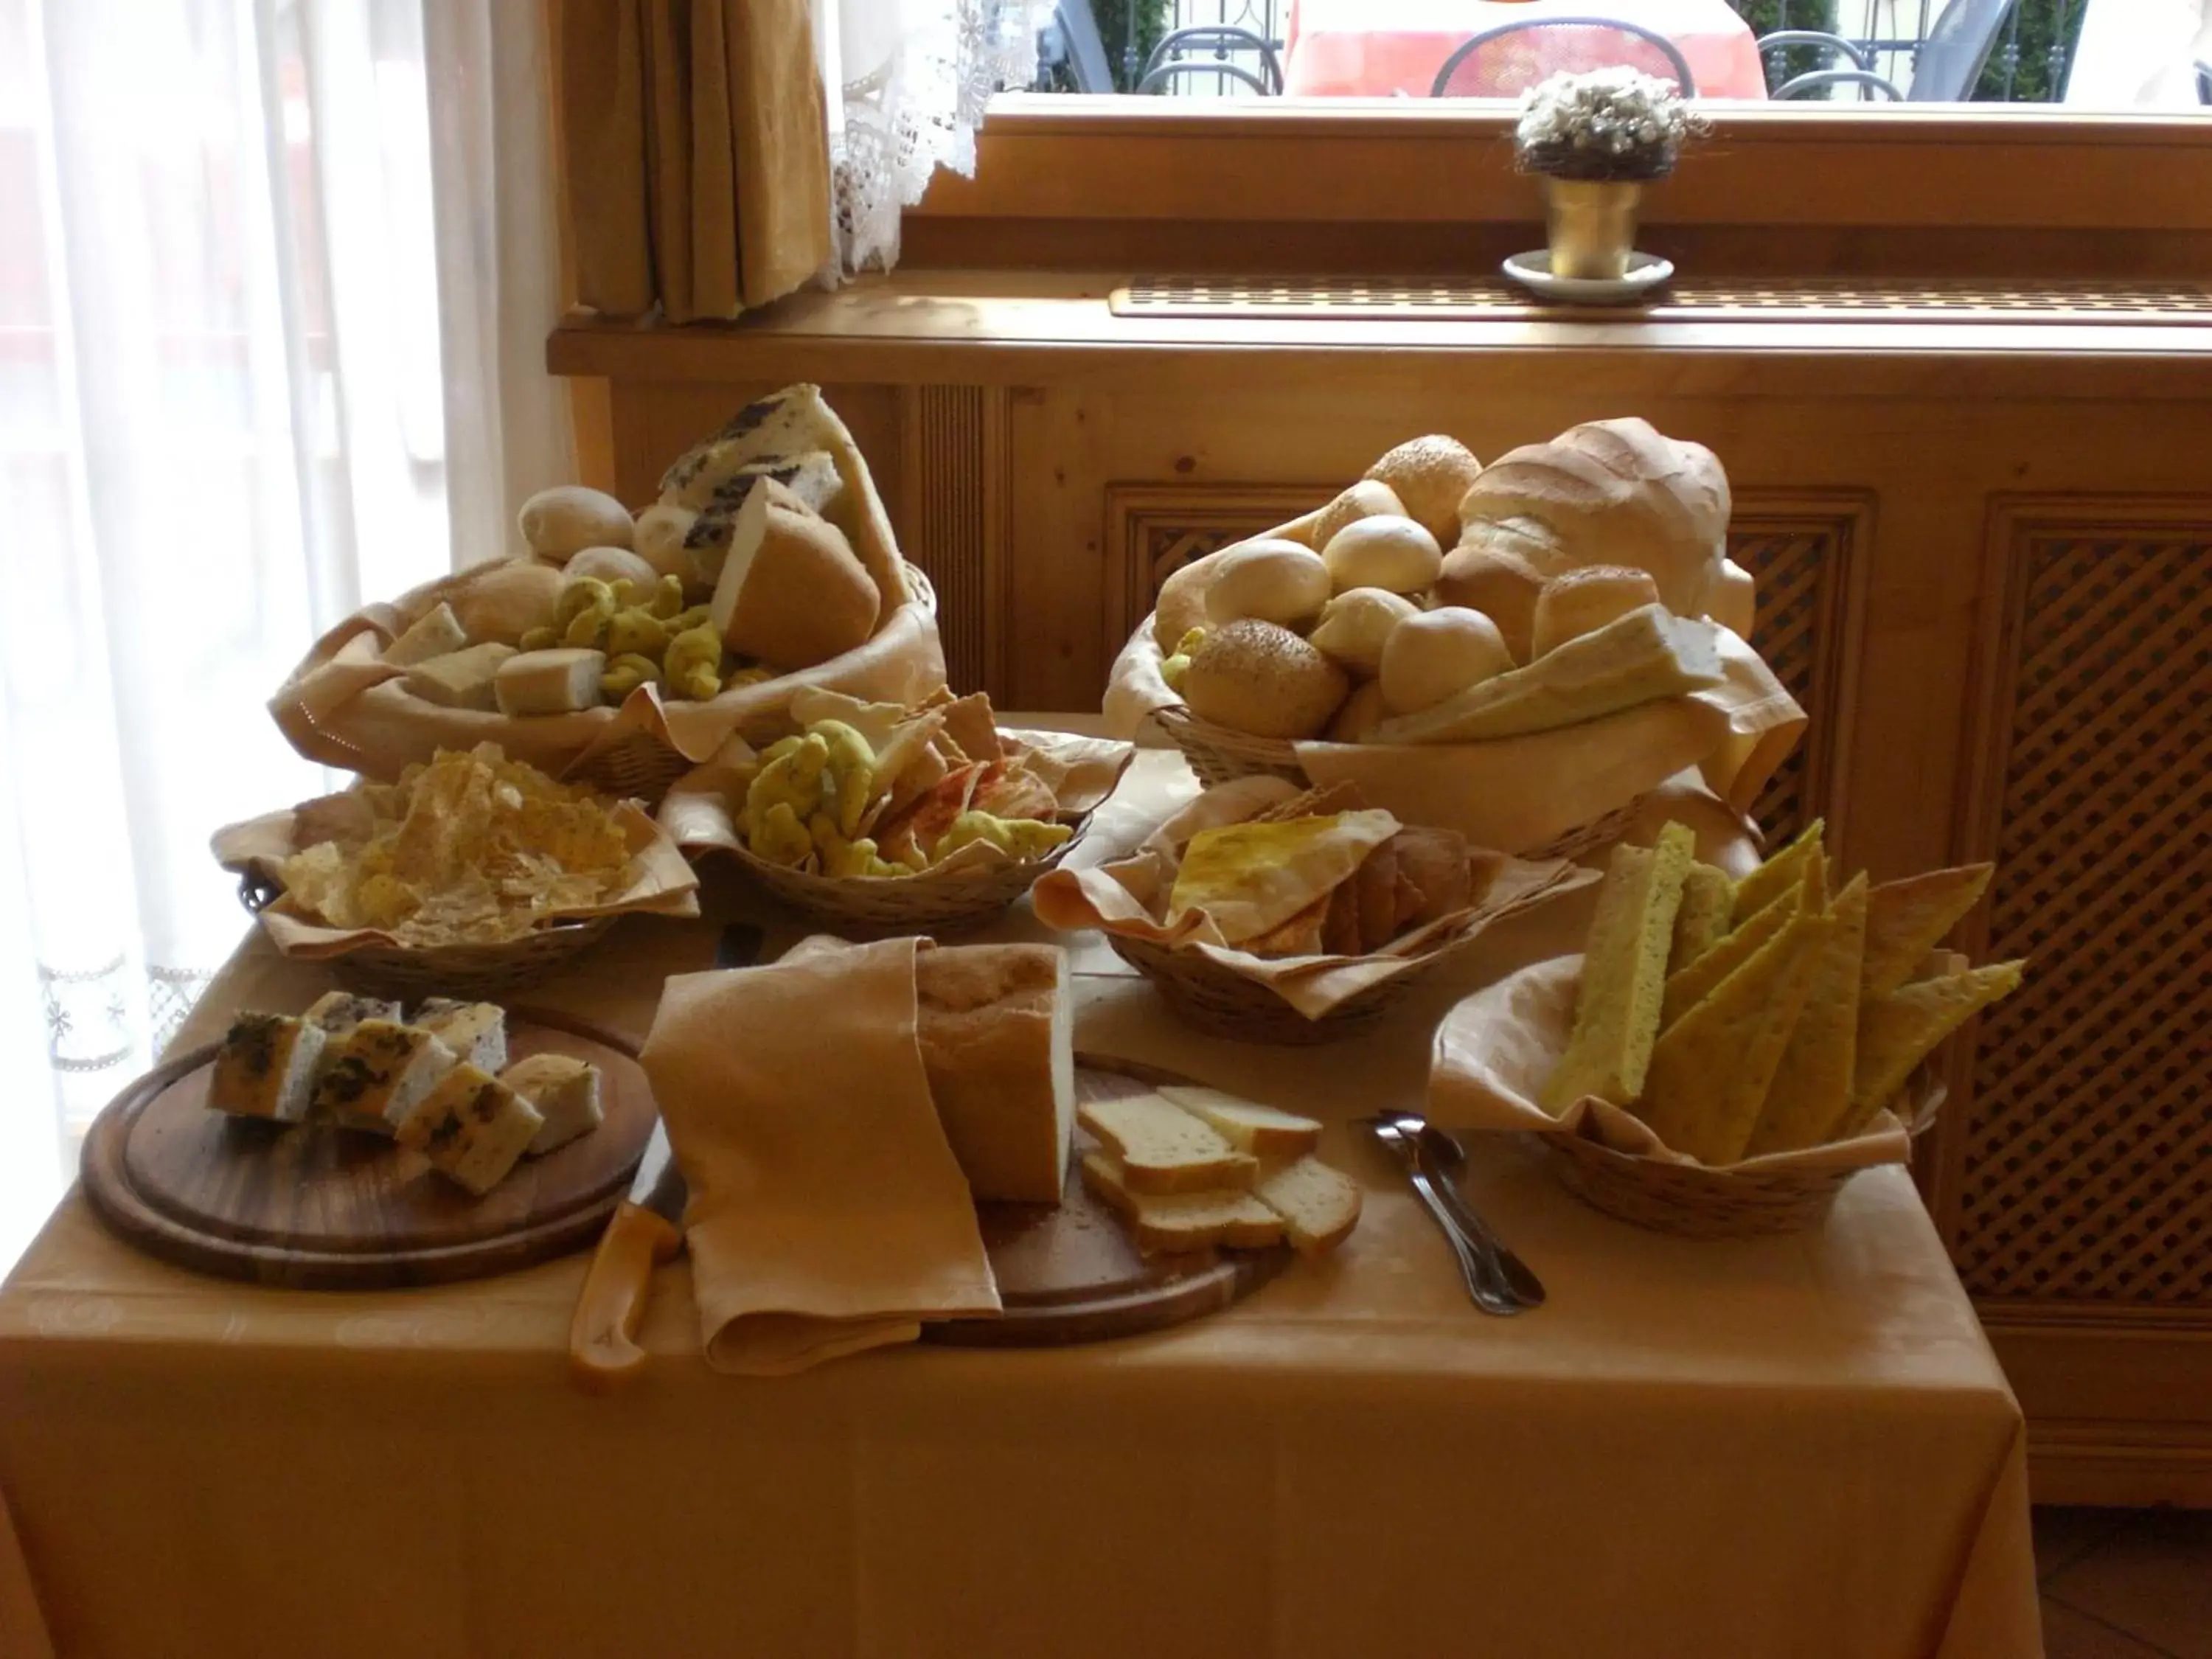 Food close-up in Hotel Cristina